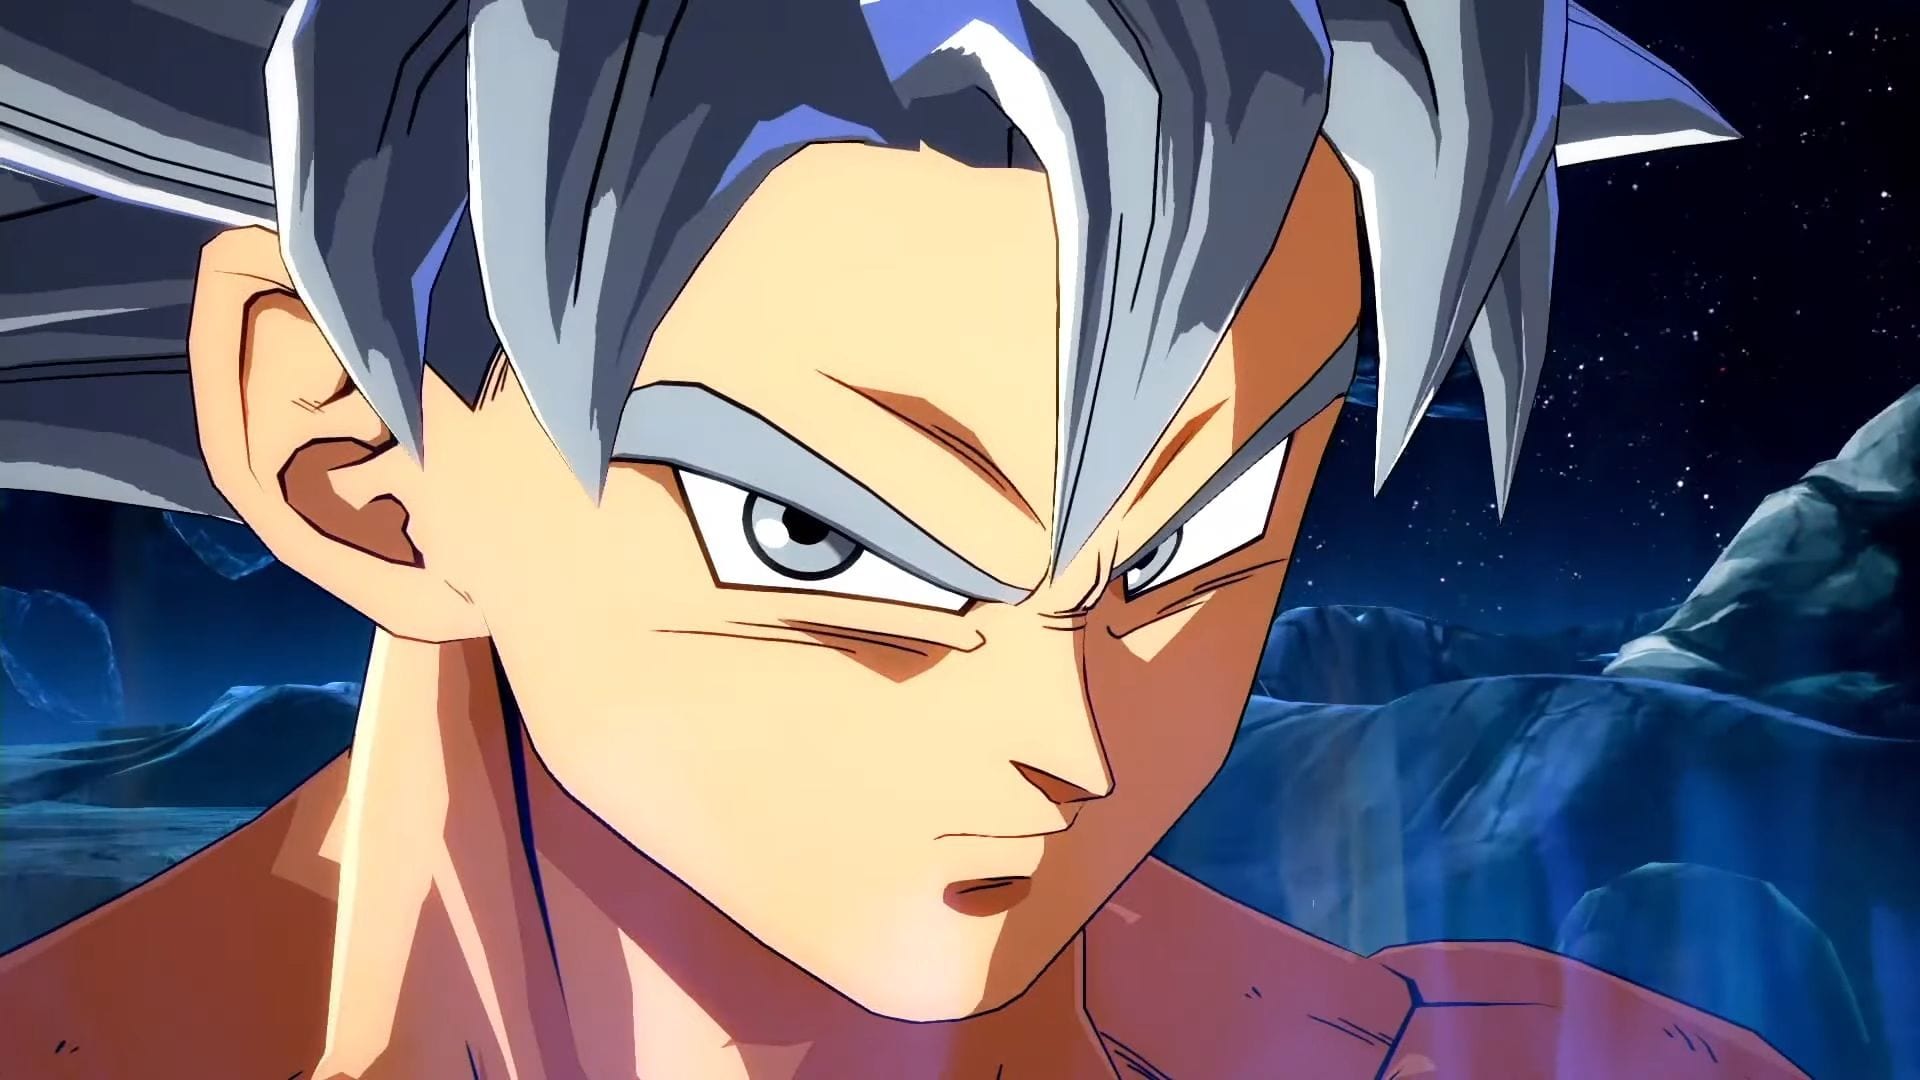 Goku sjj dios - Cual es su villano favorito de dragon ball z?